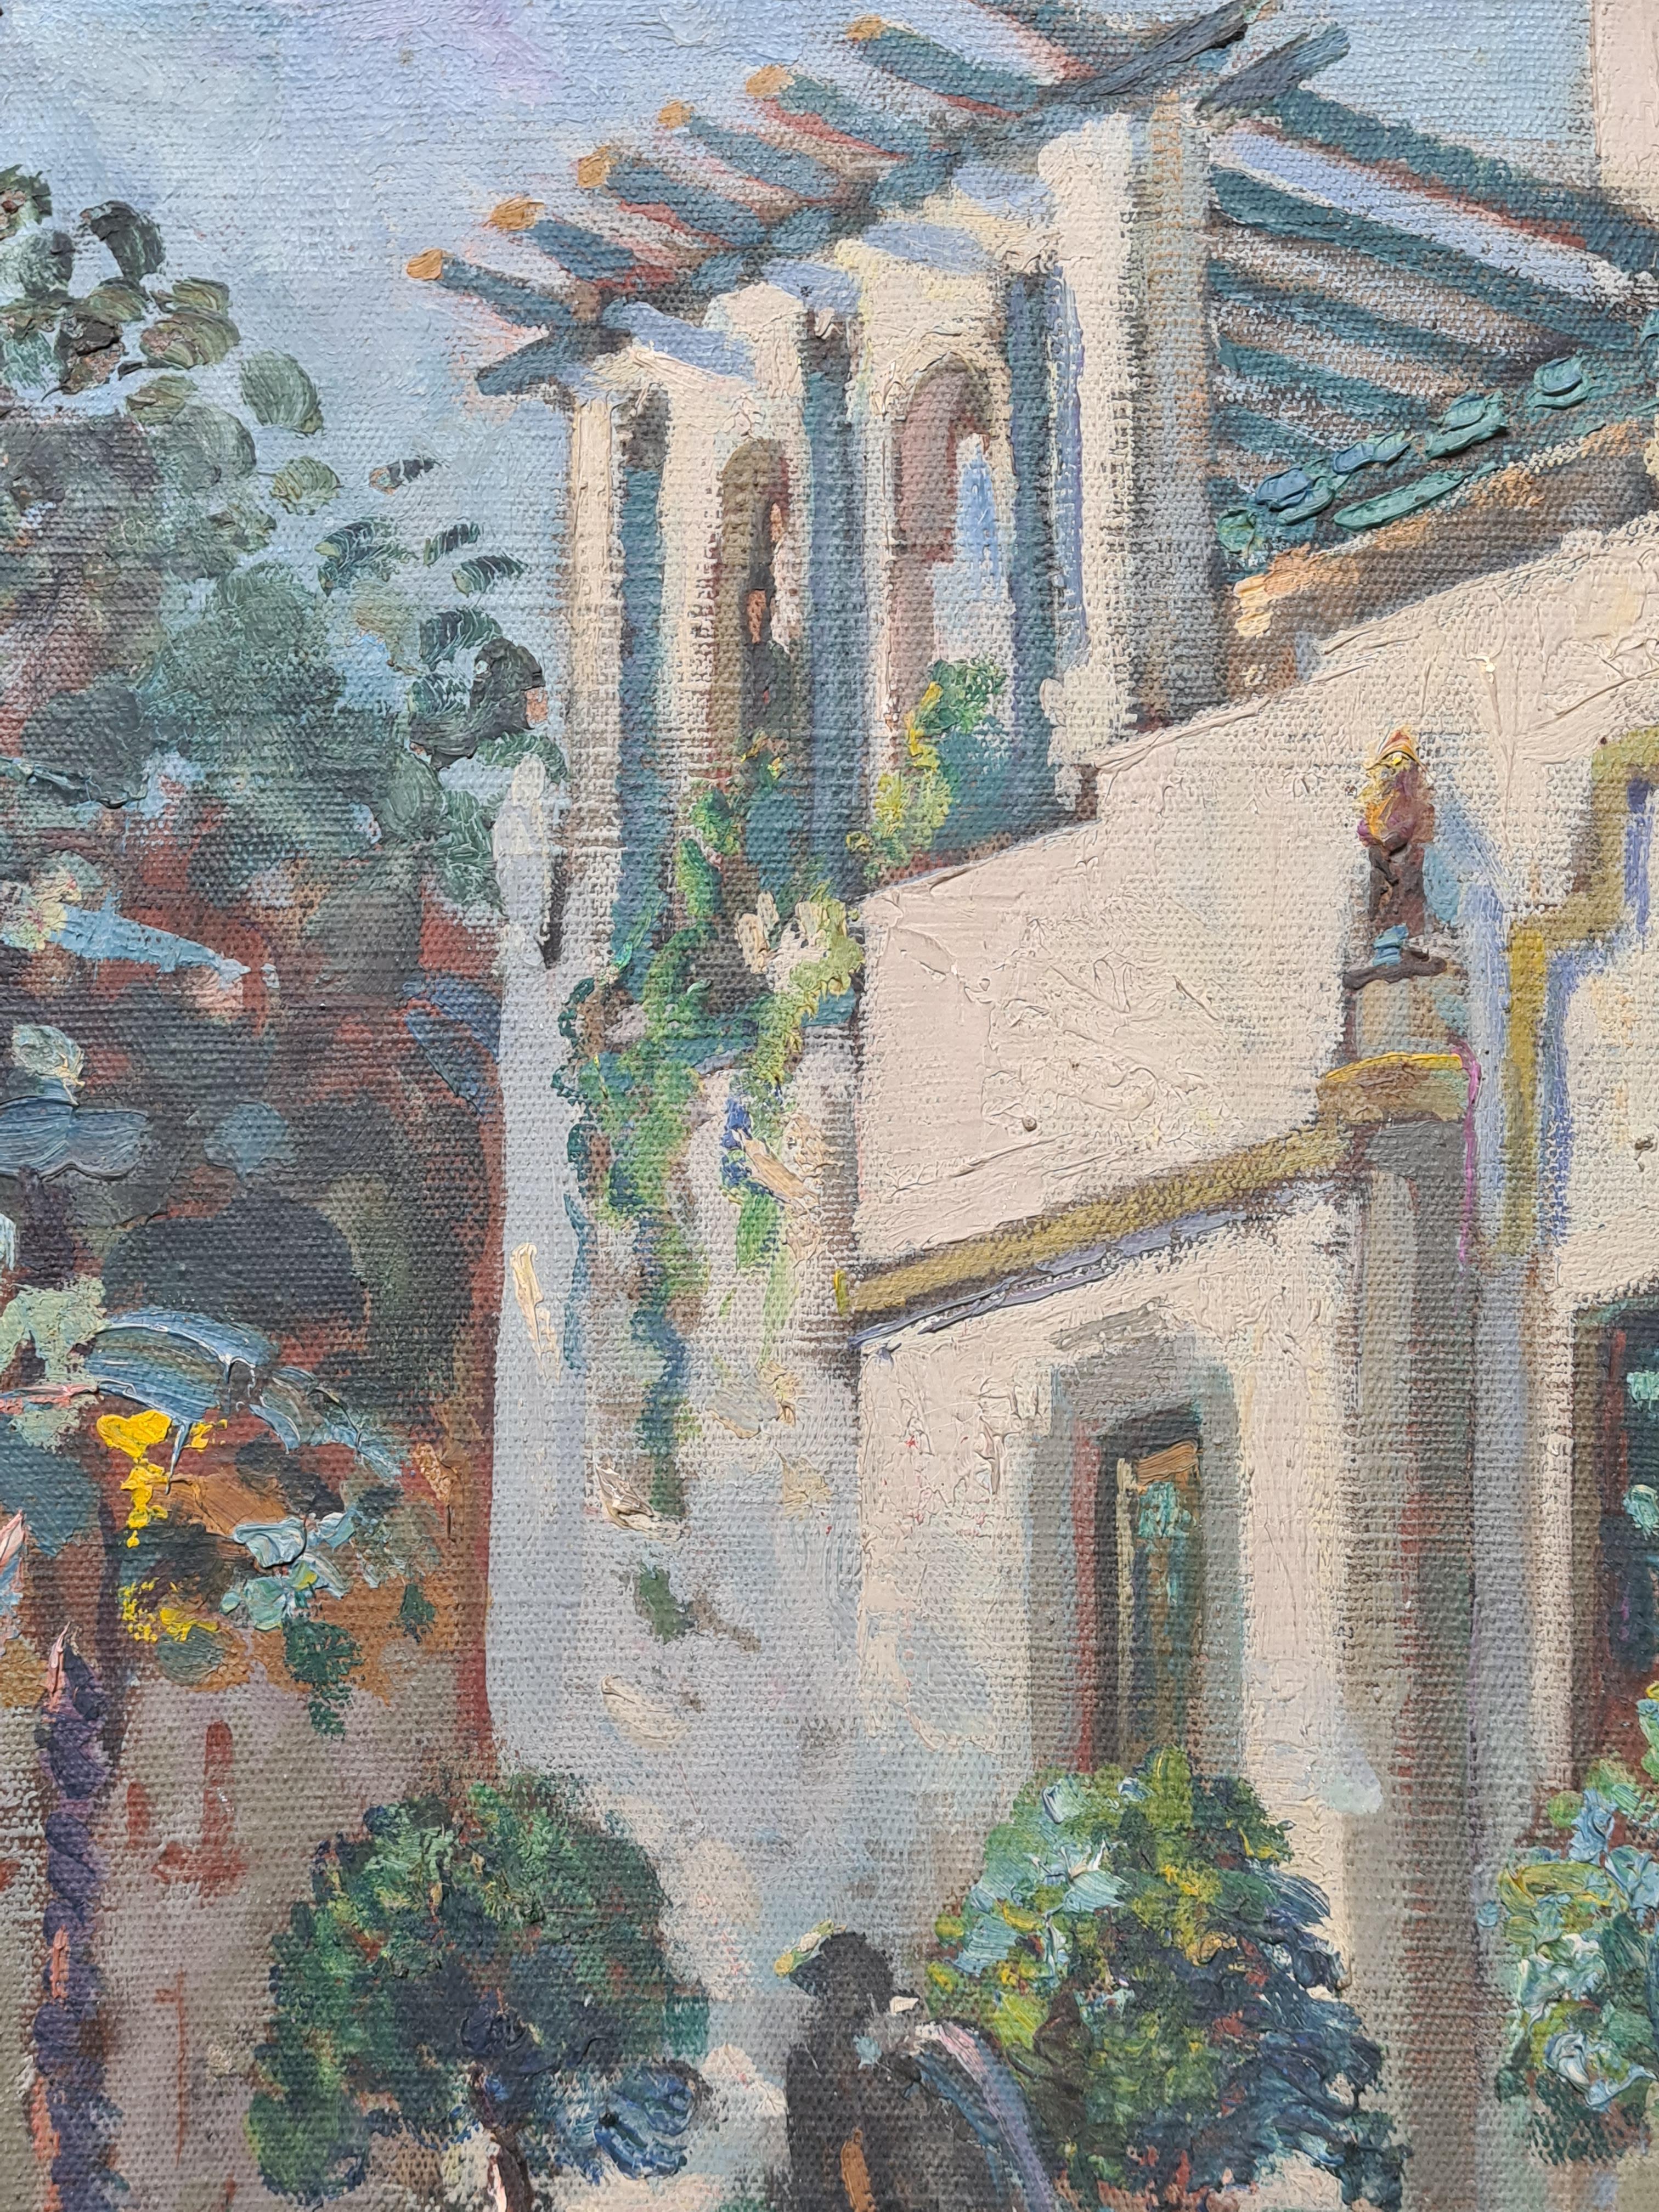 Ansicht einer Villa und eines Gartens in St. Tropez in Südfrankreich aus dem frühen 20. Jahrhundert in Öl auf Leinwand von der französischen Künstlerin Suzanne Minier. Das Gemälde ist unten links signiert. Auf der Rückseite der Leinwand befindet